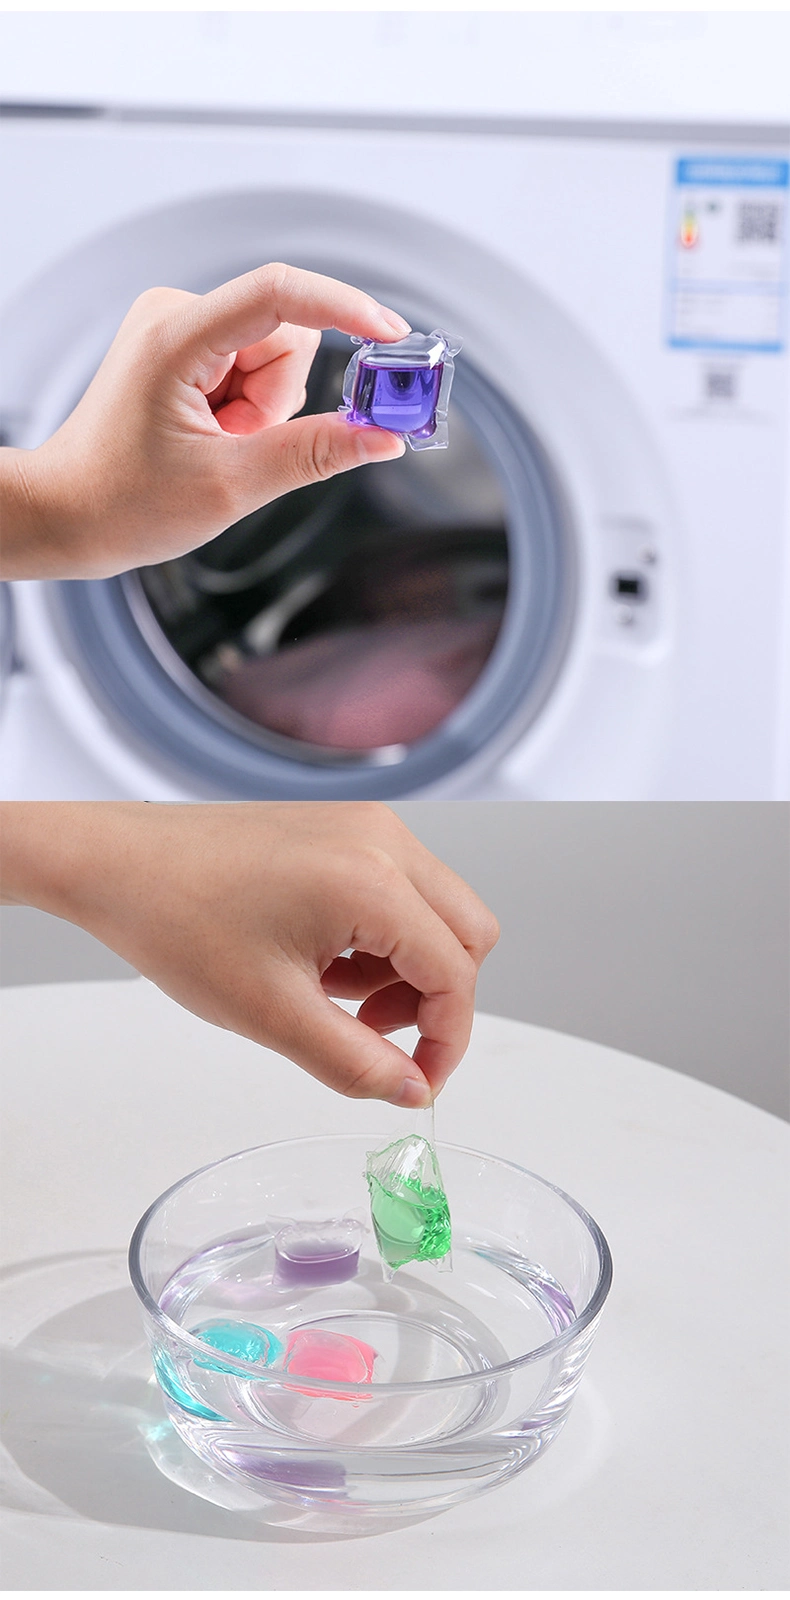 Detergent Powder Natural Fragrance Laundry Detergent Pods 8g Washing Powder